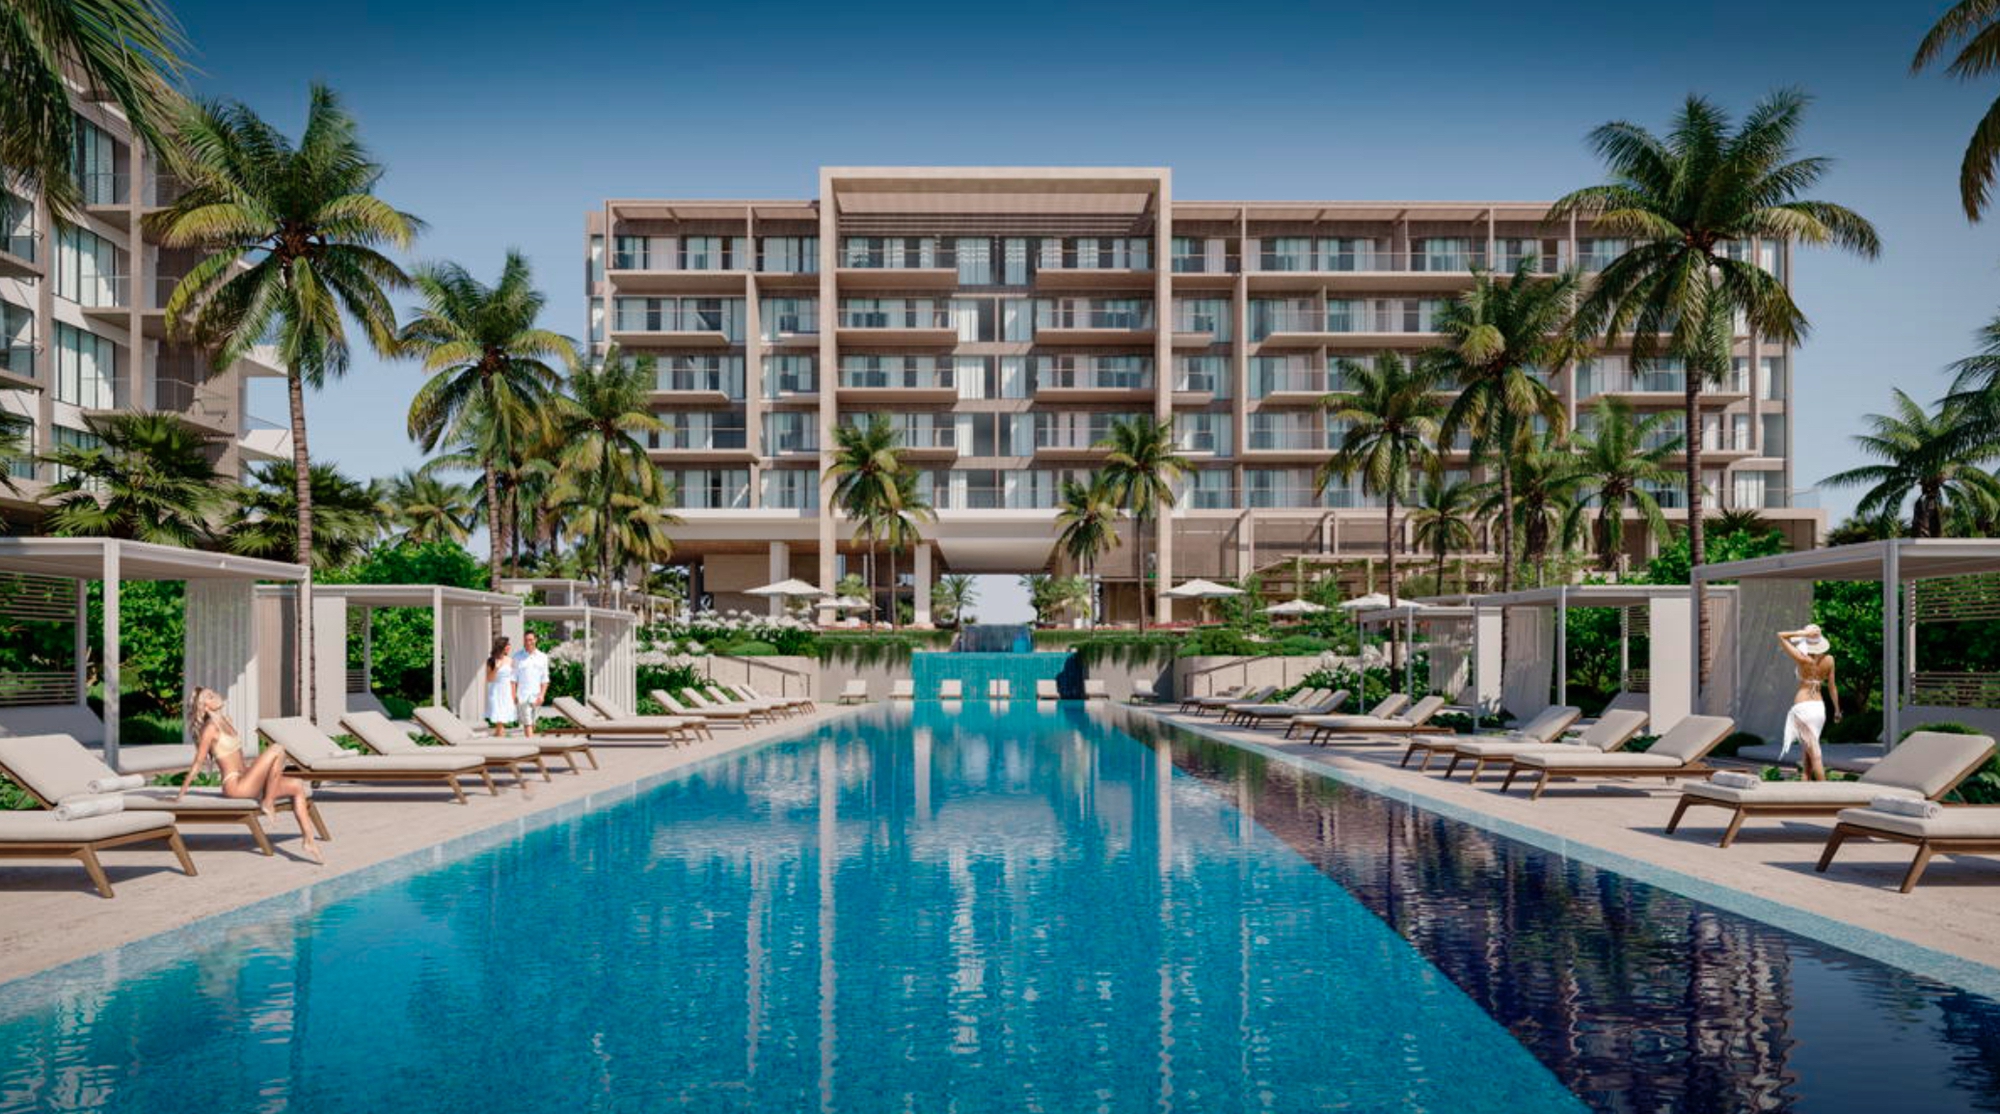 Chuyện chưa kể về Kempinski Hotel – Thương hiệu khách sạn xa xỉ, là lựa chọn kín tiếng của hoàng gia và giới siêu giàu trên thế giới- Ảnh 1.